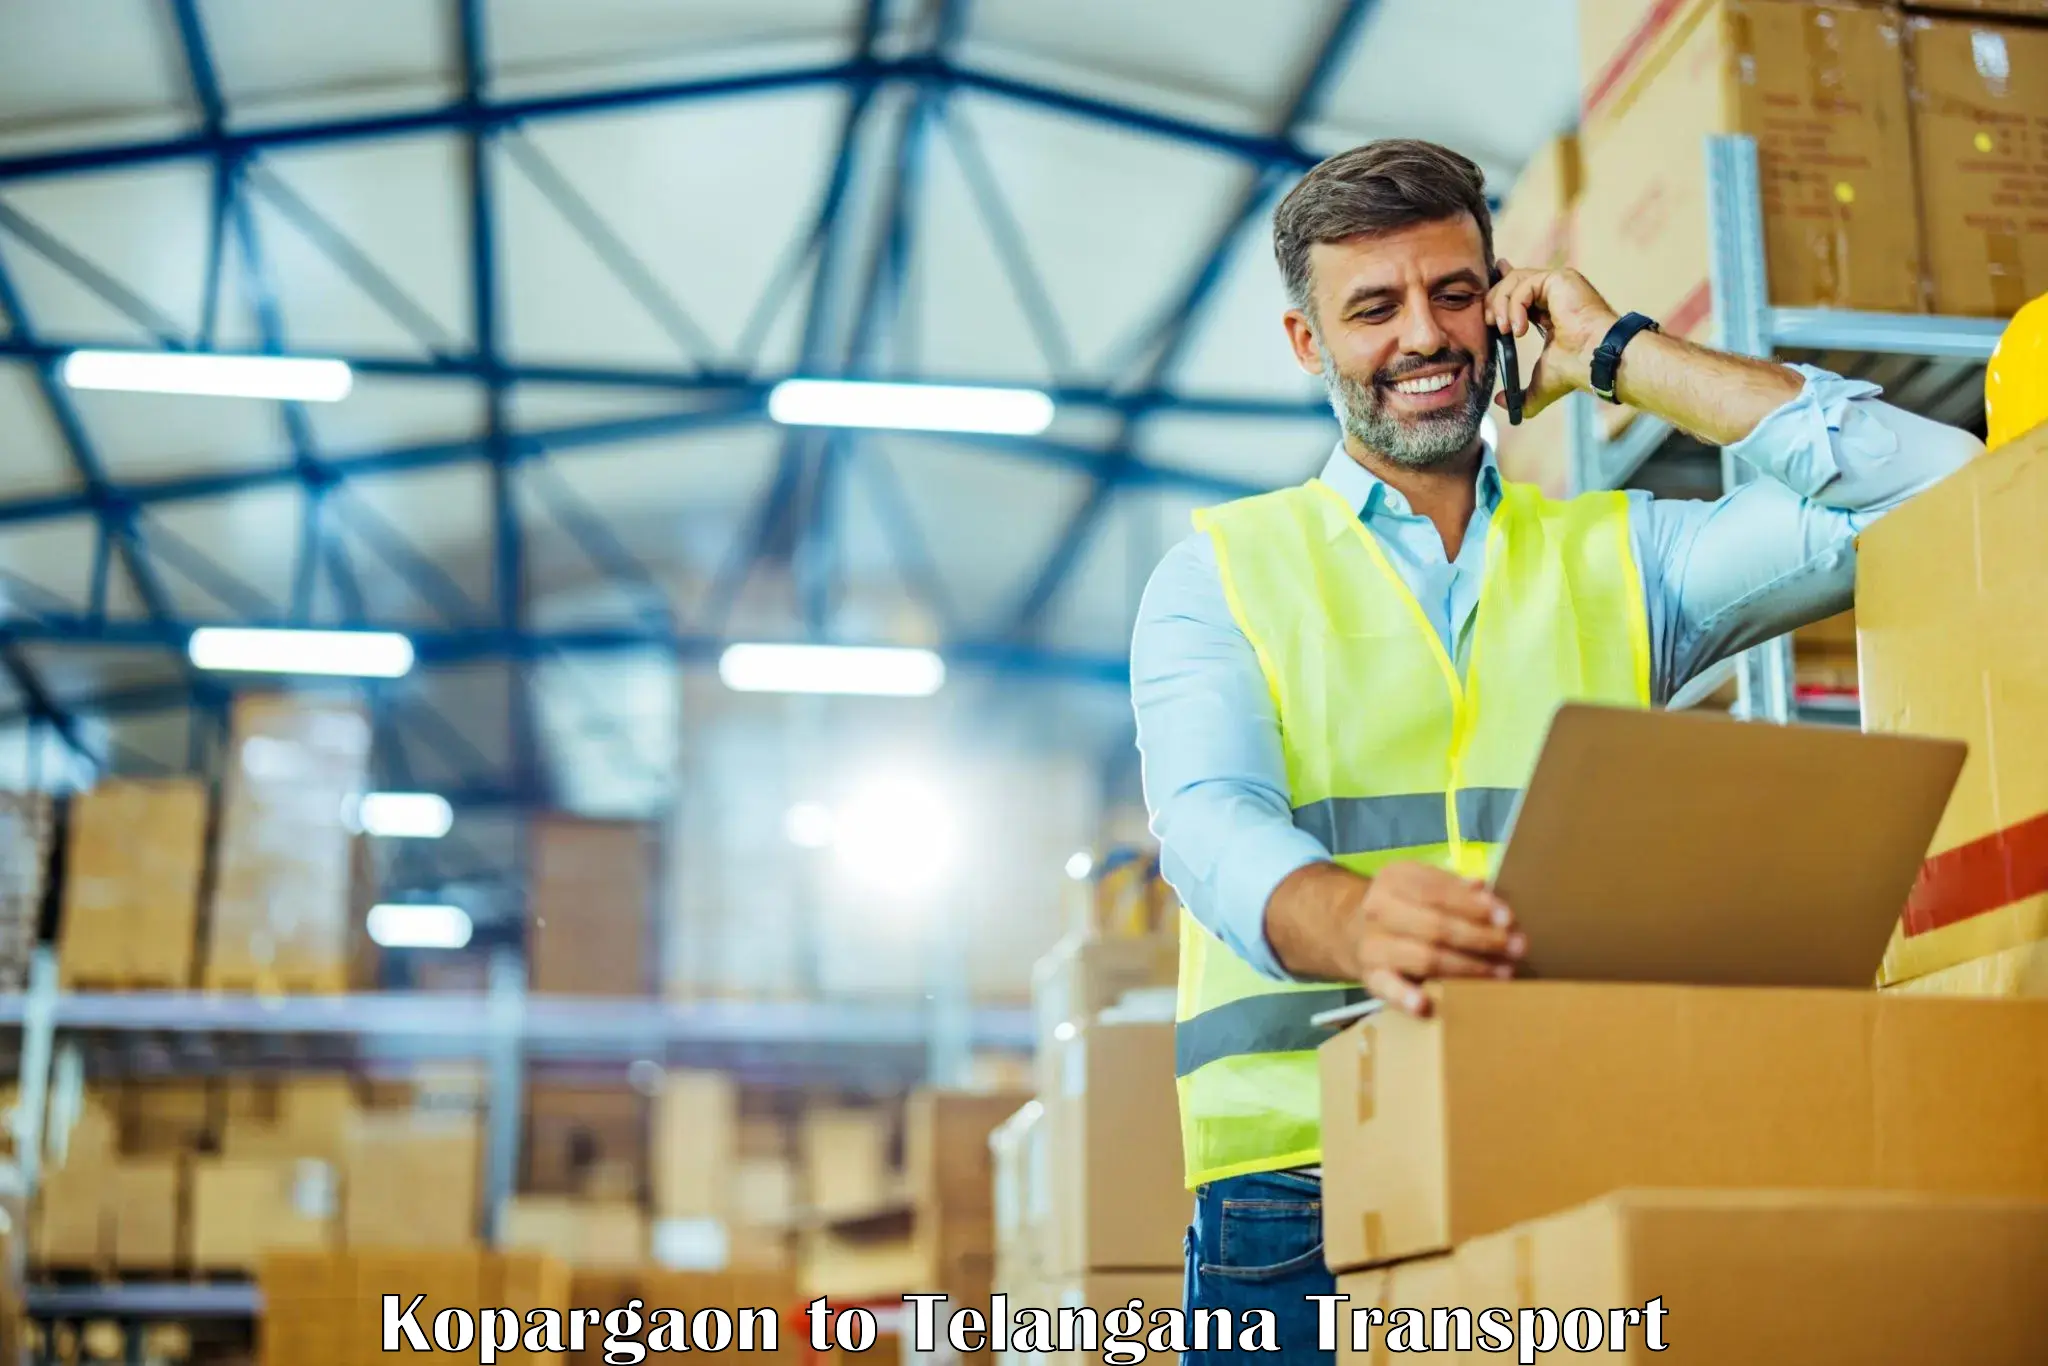 International cargo transportation services Kopargaon to Narsampet